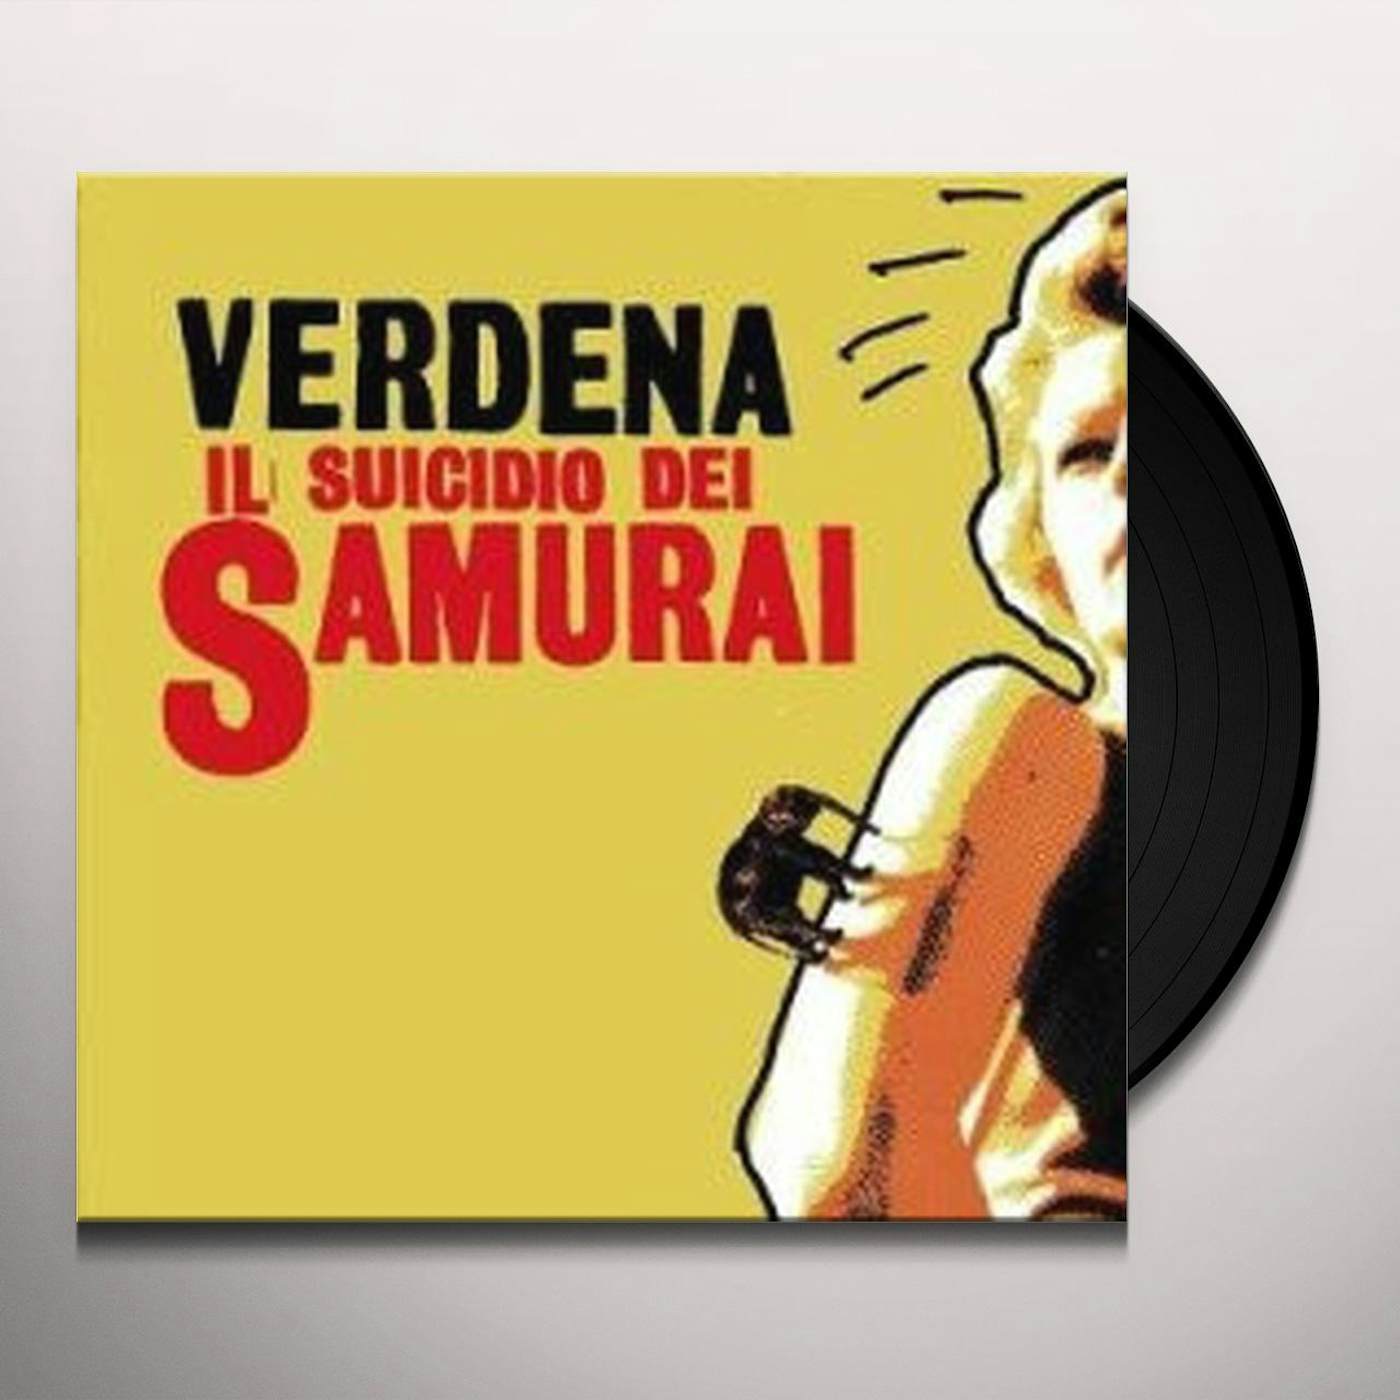 Verdena Il suicidio dei Samurai Vinyl Record